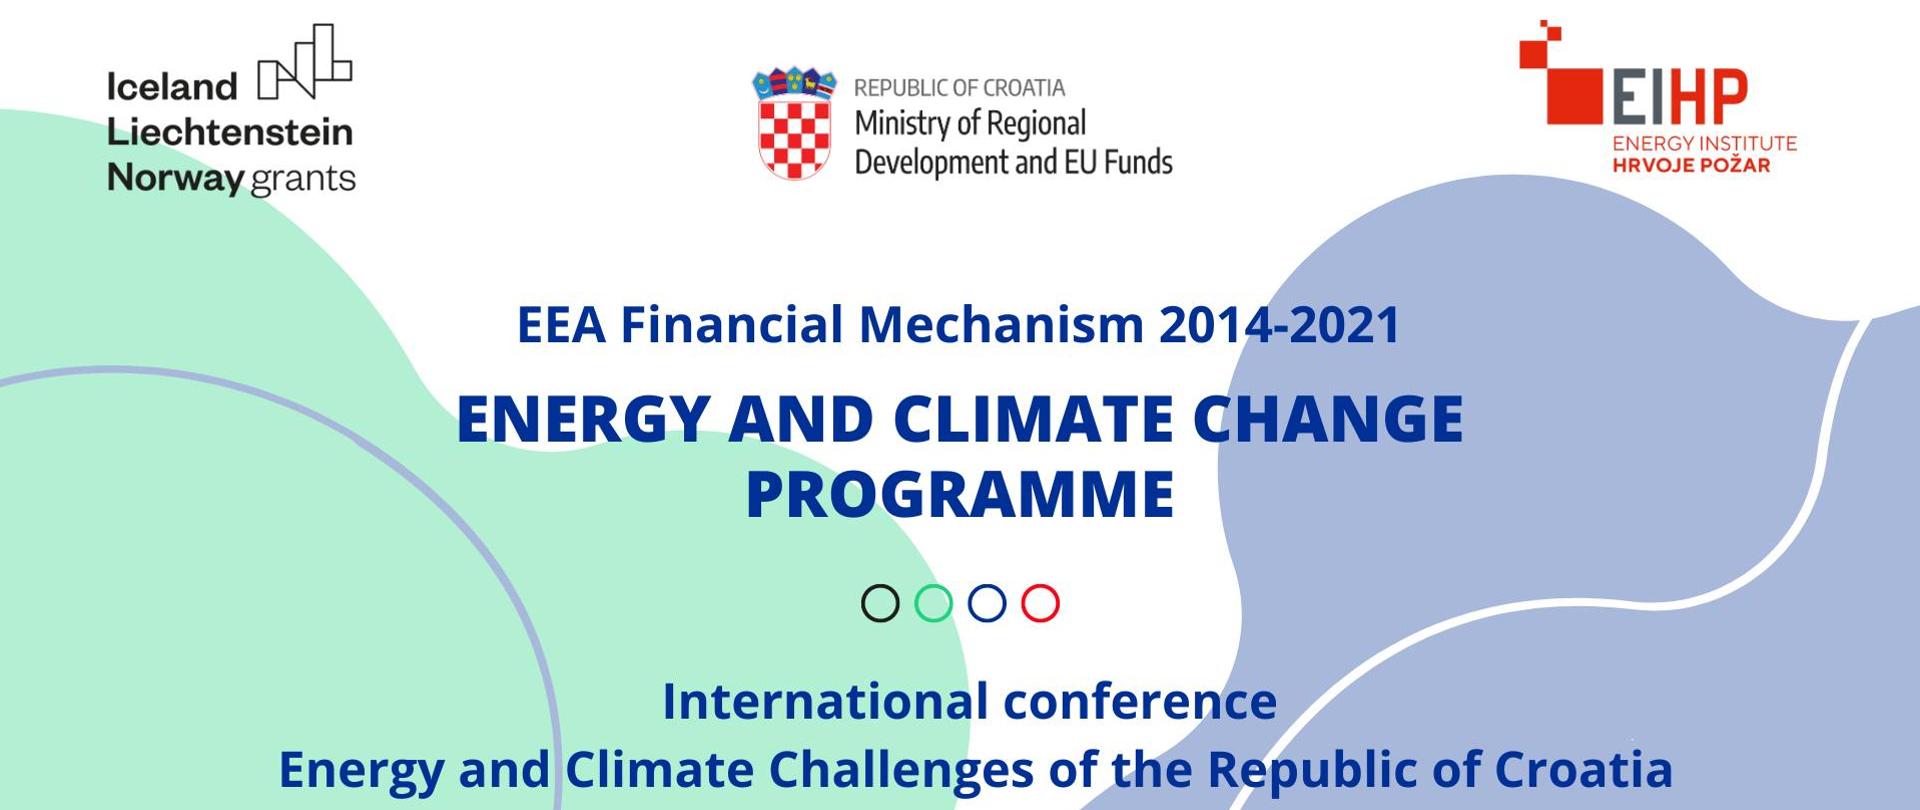 Międzynarodowa Konferencja Programu Energia i Zmiany Klimatu „Wyzwania energetyczne i klimatyczne Republiki Chorwacji”